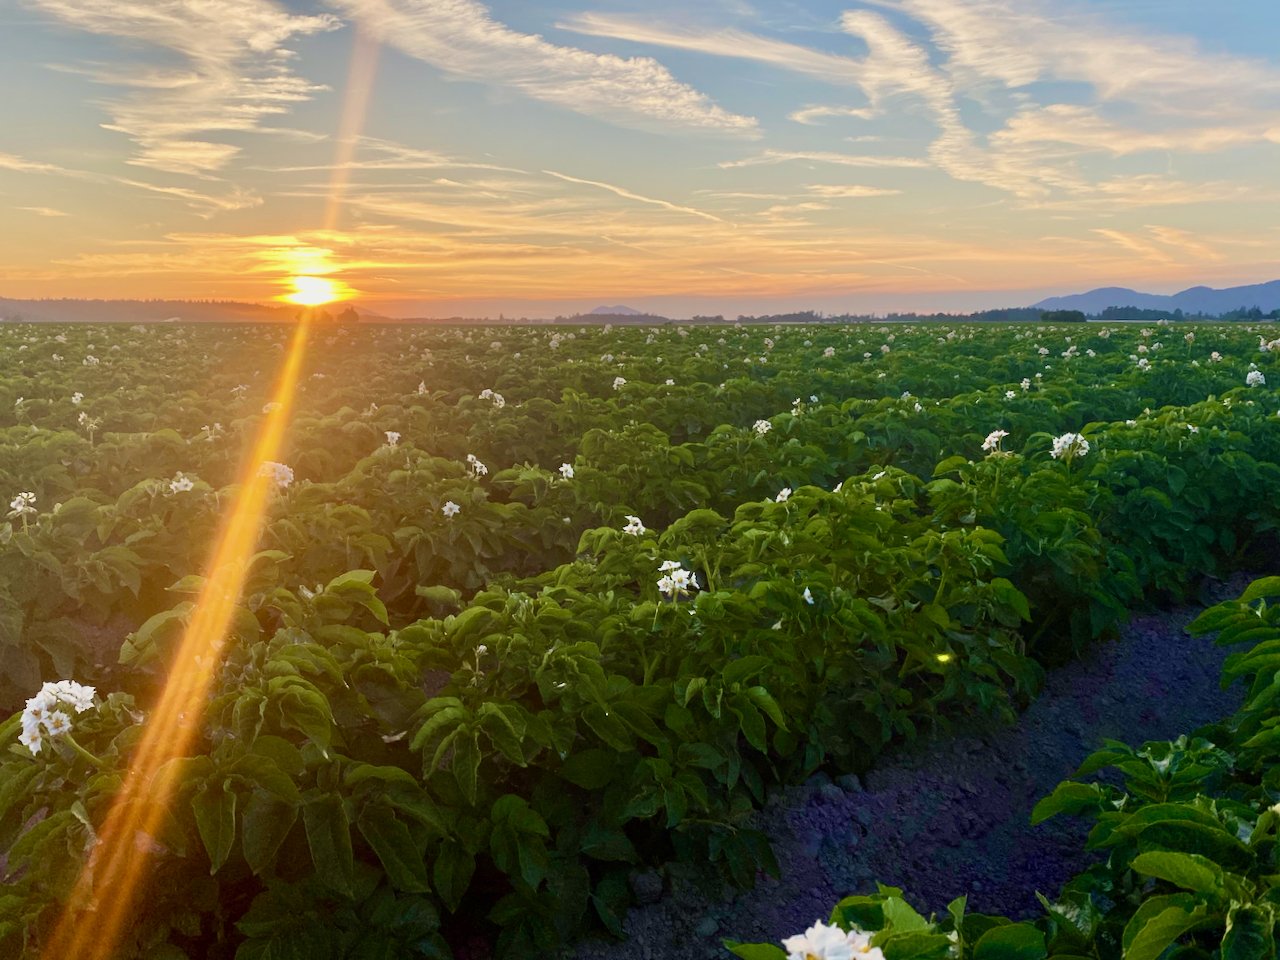 Potato field in Washington at sunset